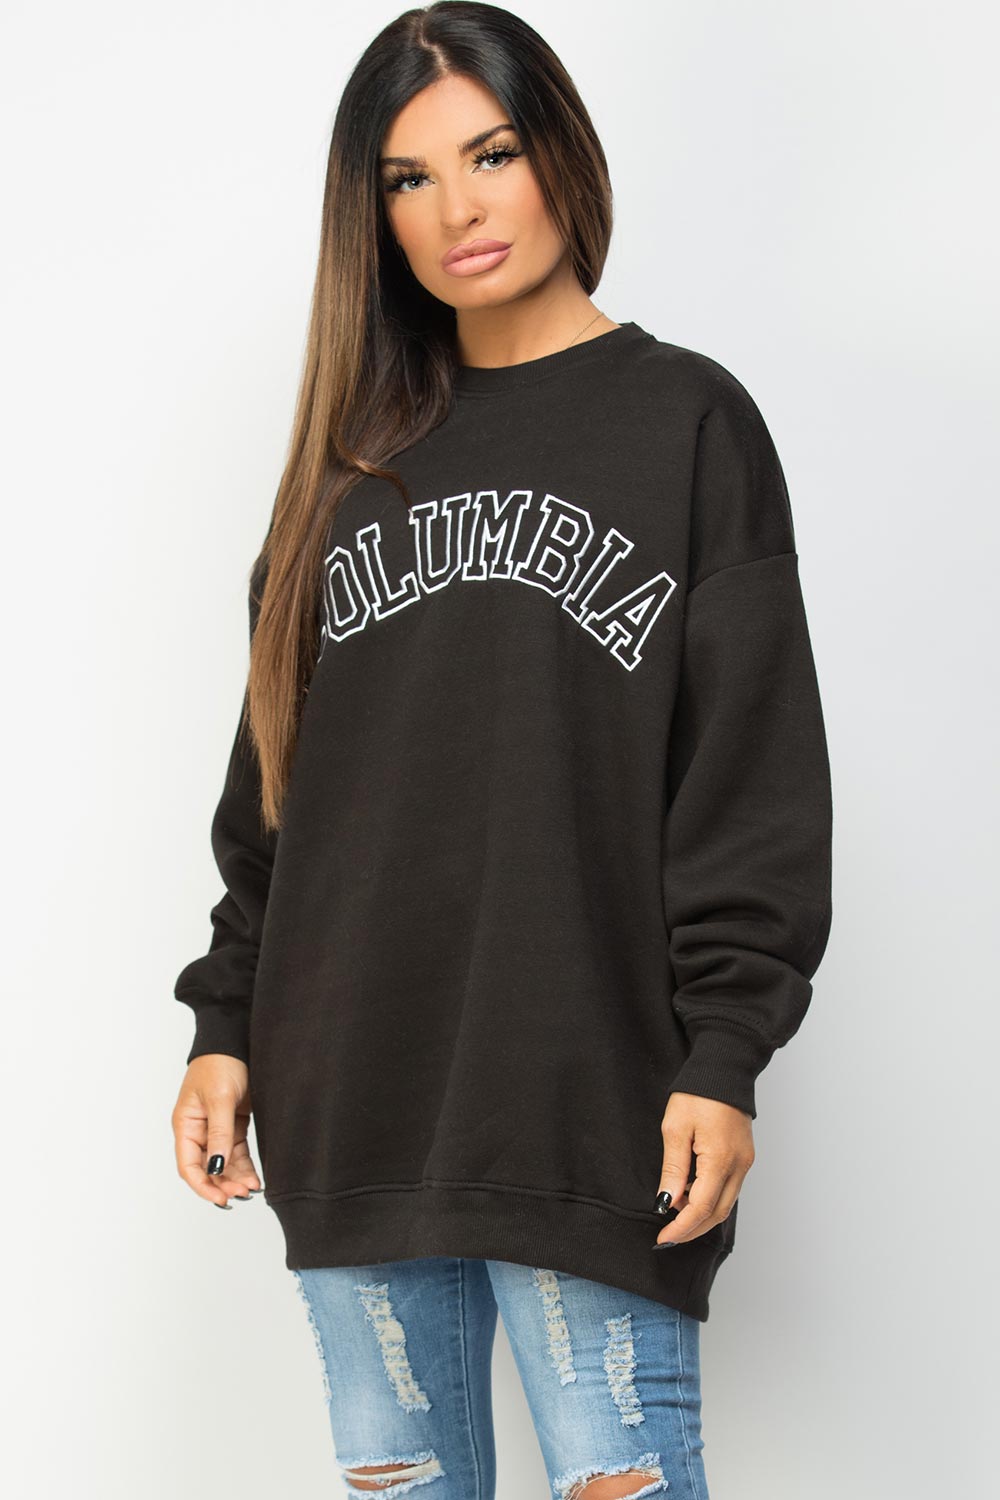 columbia embroidery oversized sweatshirt black 